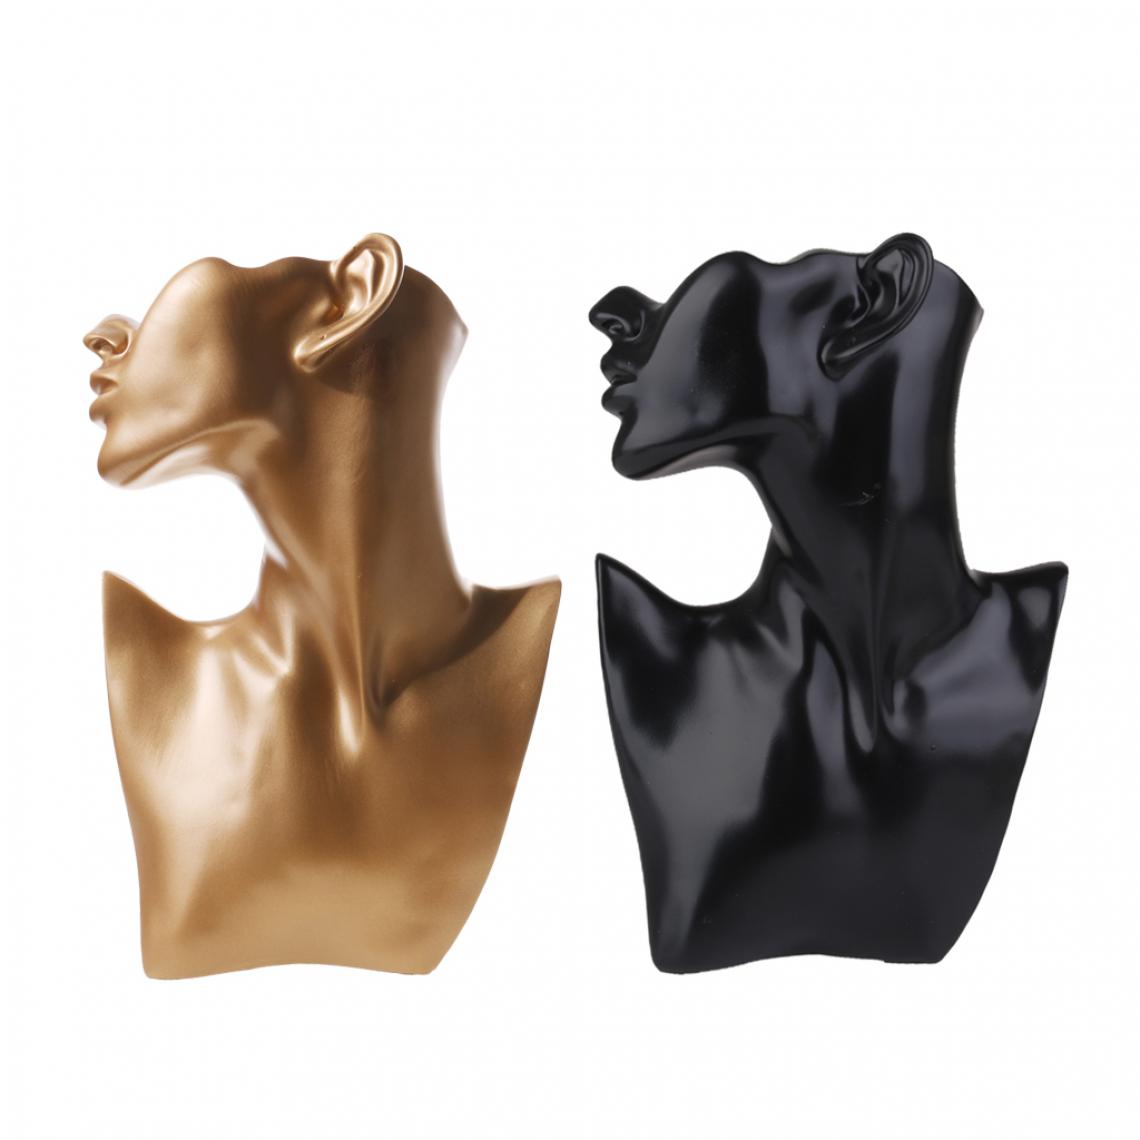 marque generique - 2pcs Présentoir Support en Résine pour Bijoux Forme de Buste Mannequin - Noir + Doré - Perles